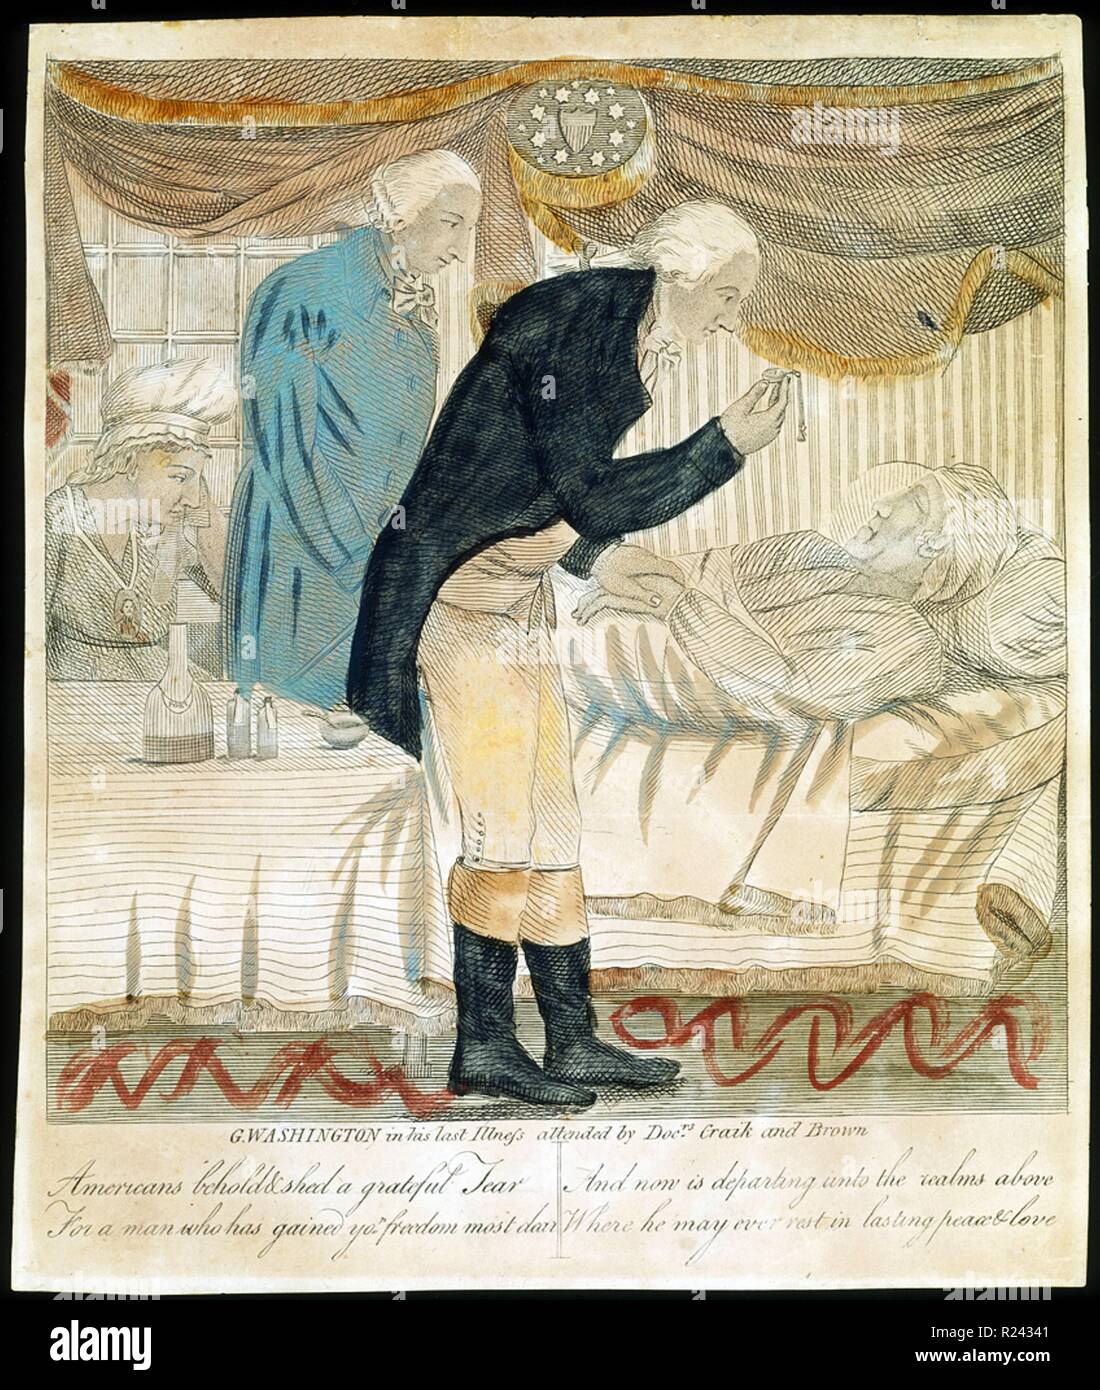 George Washington en su última enfermedad, atendidos por médicos Craik y marrón. Grabado por un artista no identificado, a comienzos del siglo XIX. Foto de stock